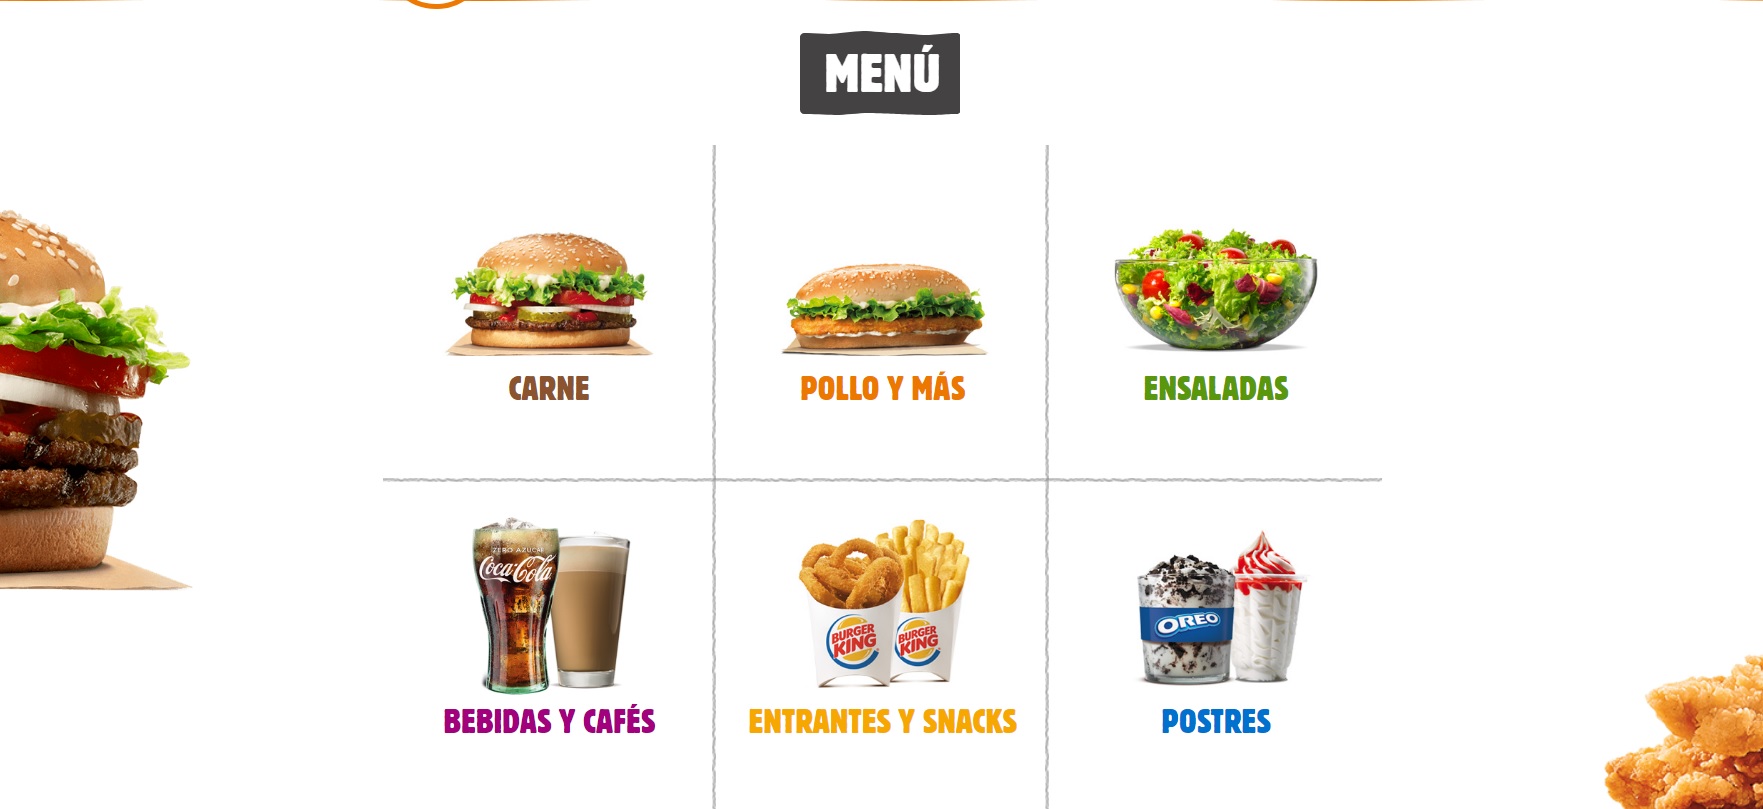 Burger King Spain Menu Prices - BK Spain Price List - 2019